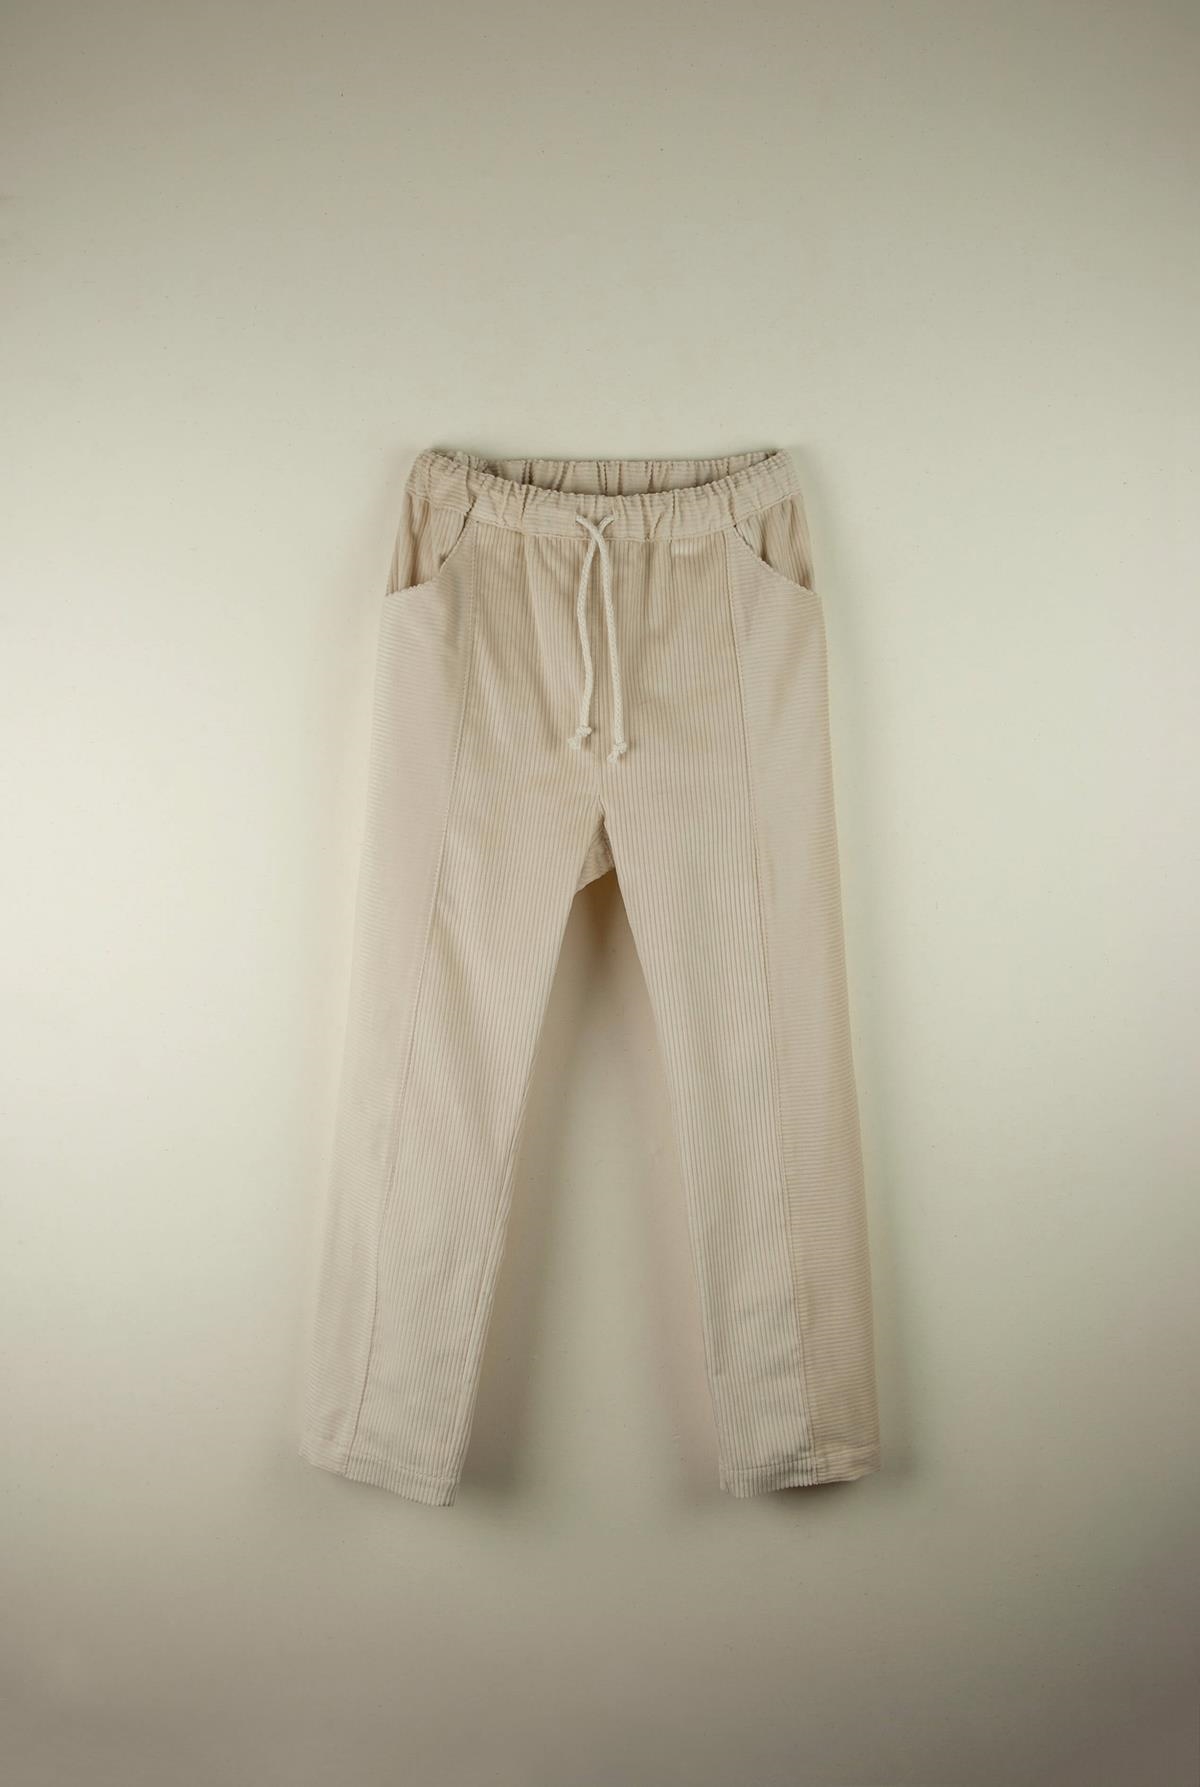 Mod.21.1 Off-white trousers | AW21.22 Mod.21.1 Off-white trousers | 1